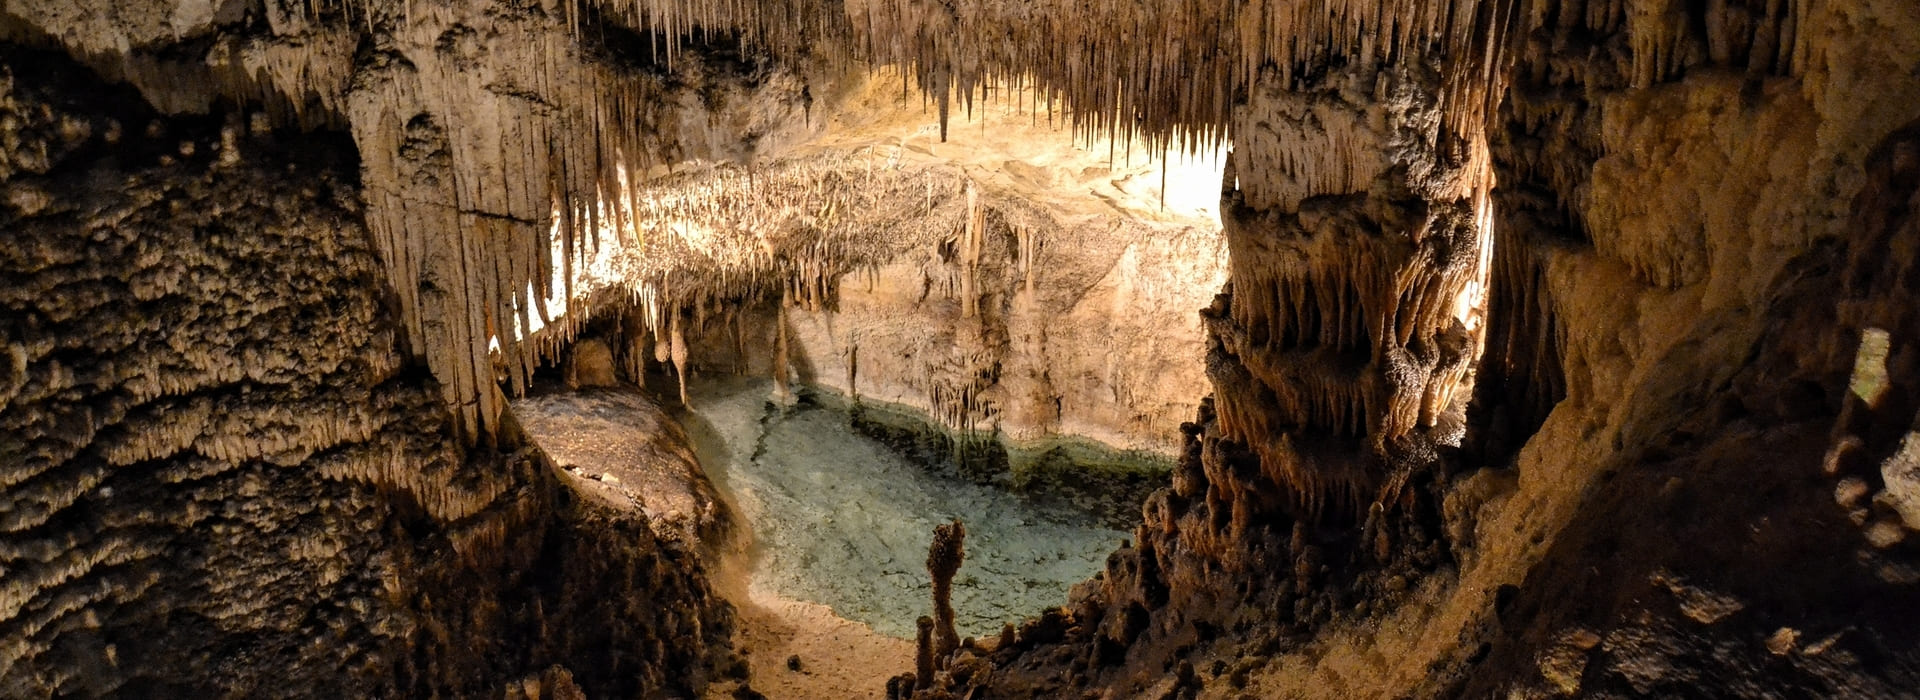 jaskinie na Majorce - 5 najpiękniejszych jaskiń - Majorka